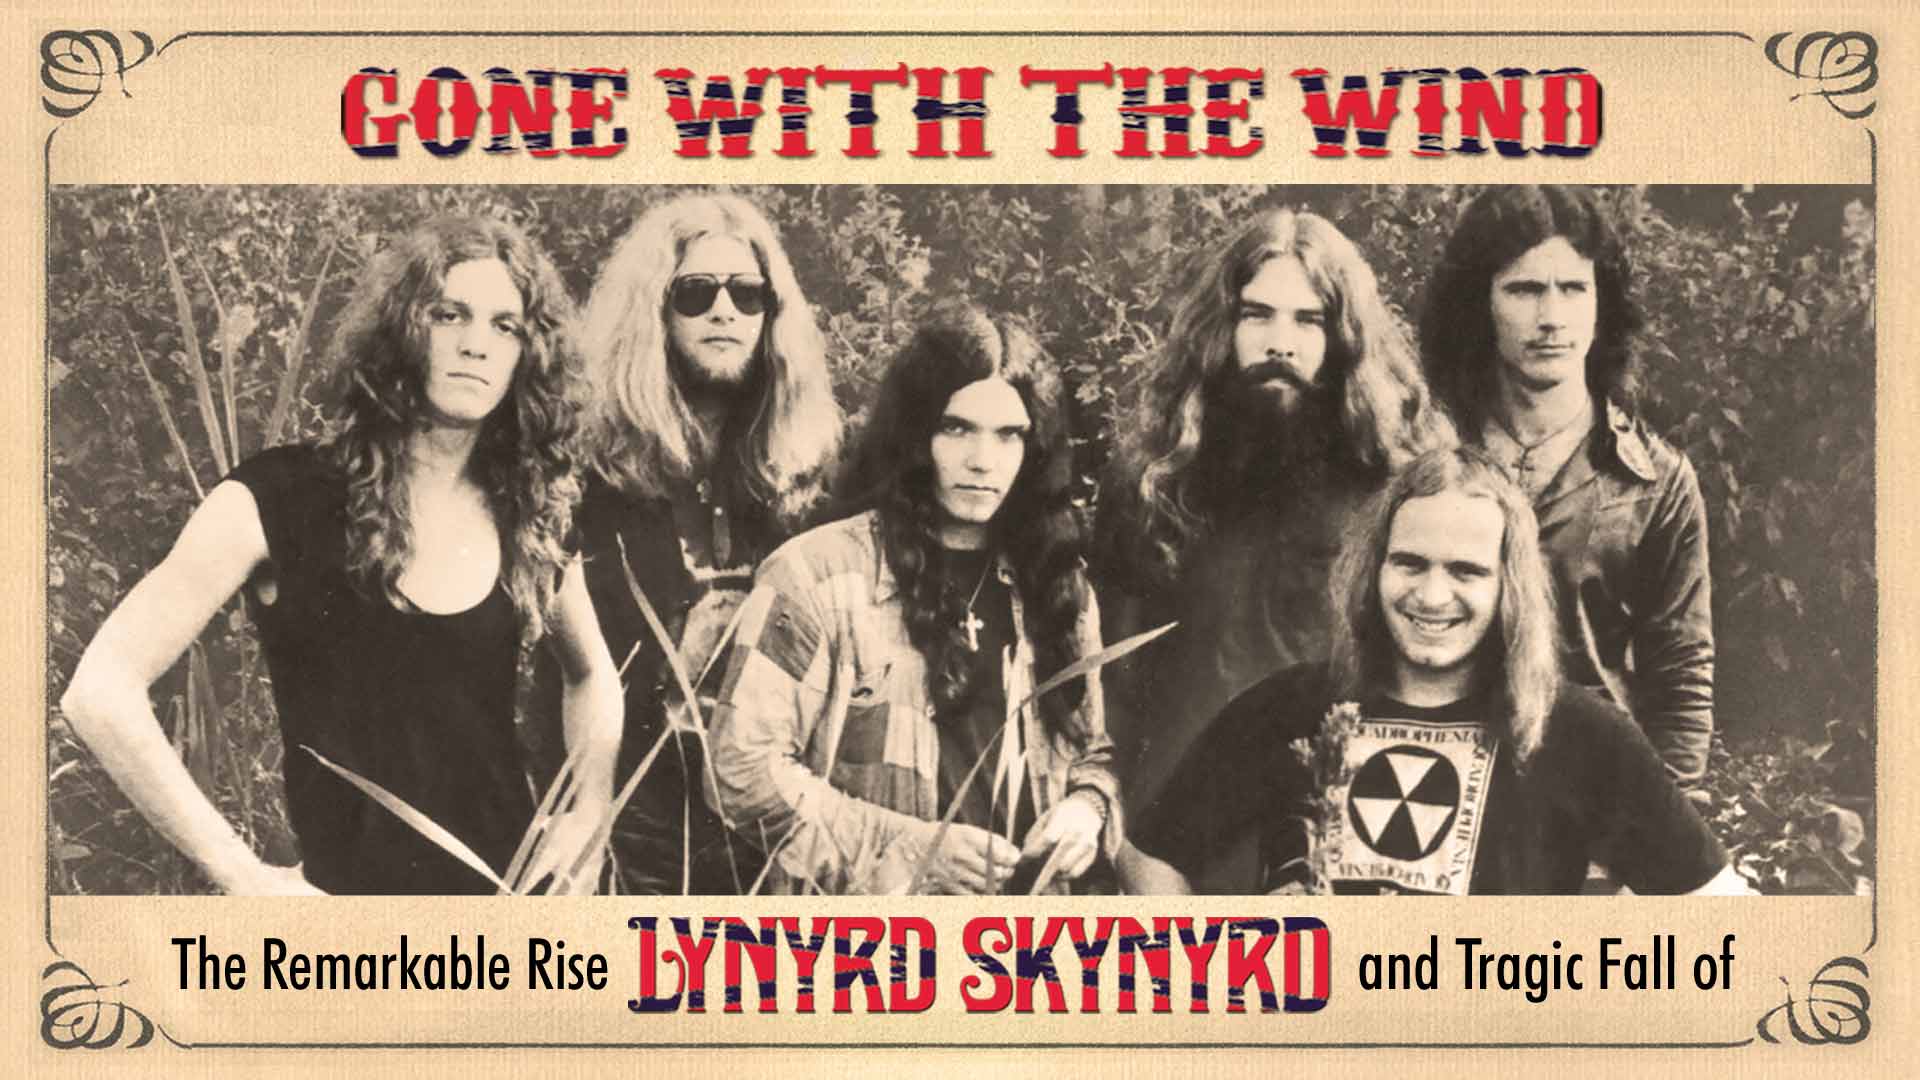 Lynyrd Skynyrd: Gone With The Wind